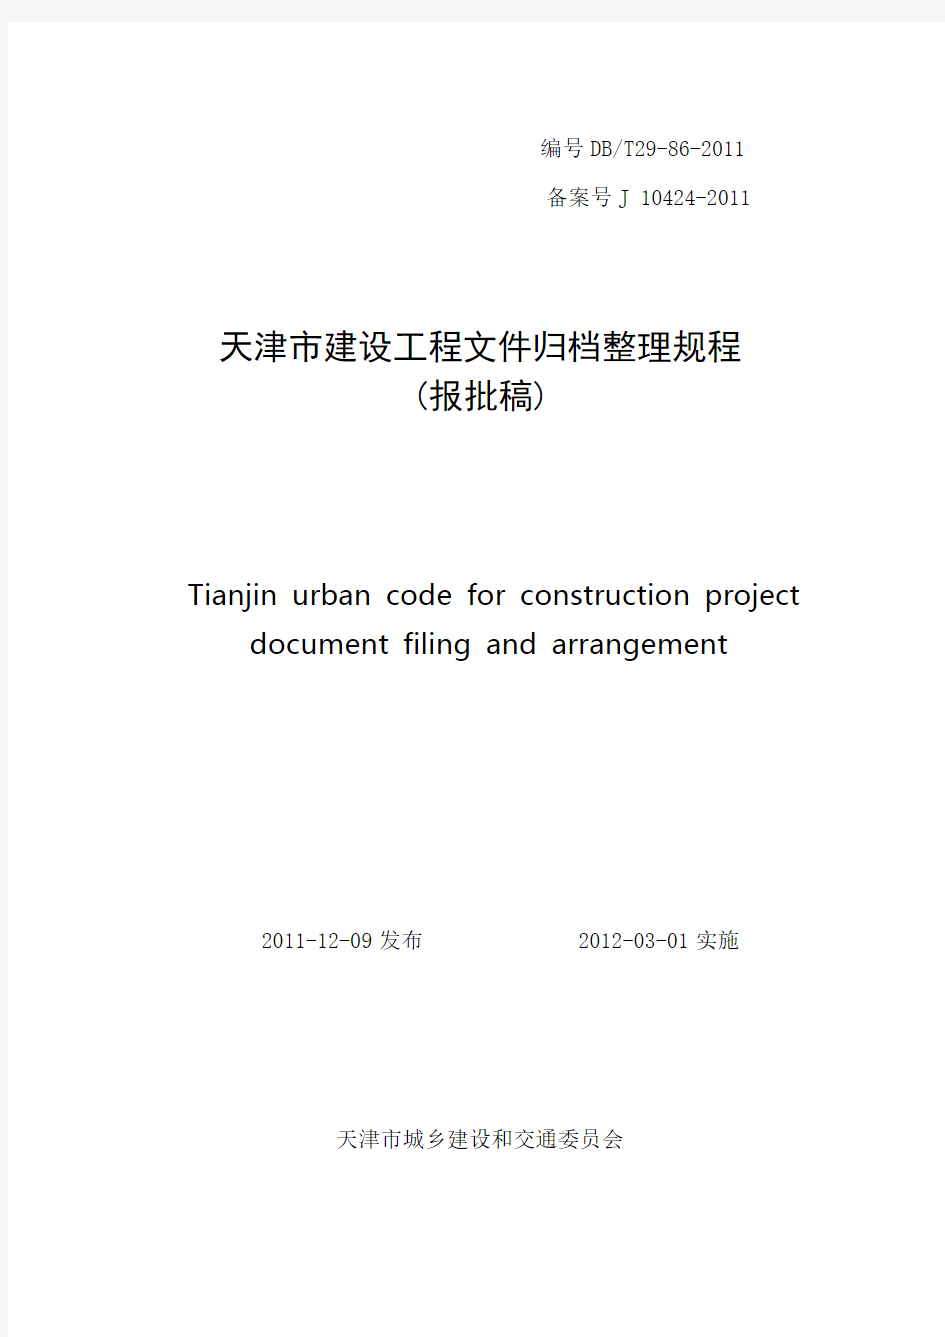 天津市建设工程文件归档整理规程